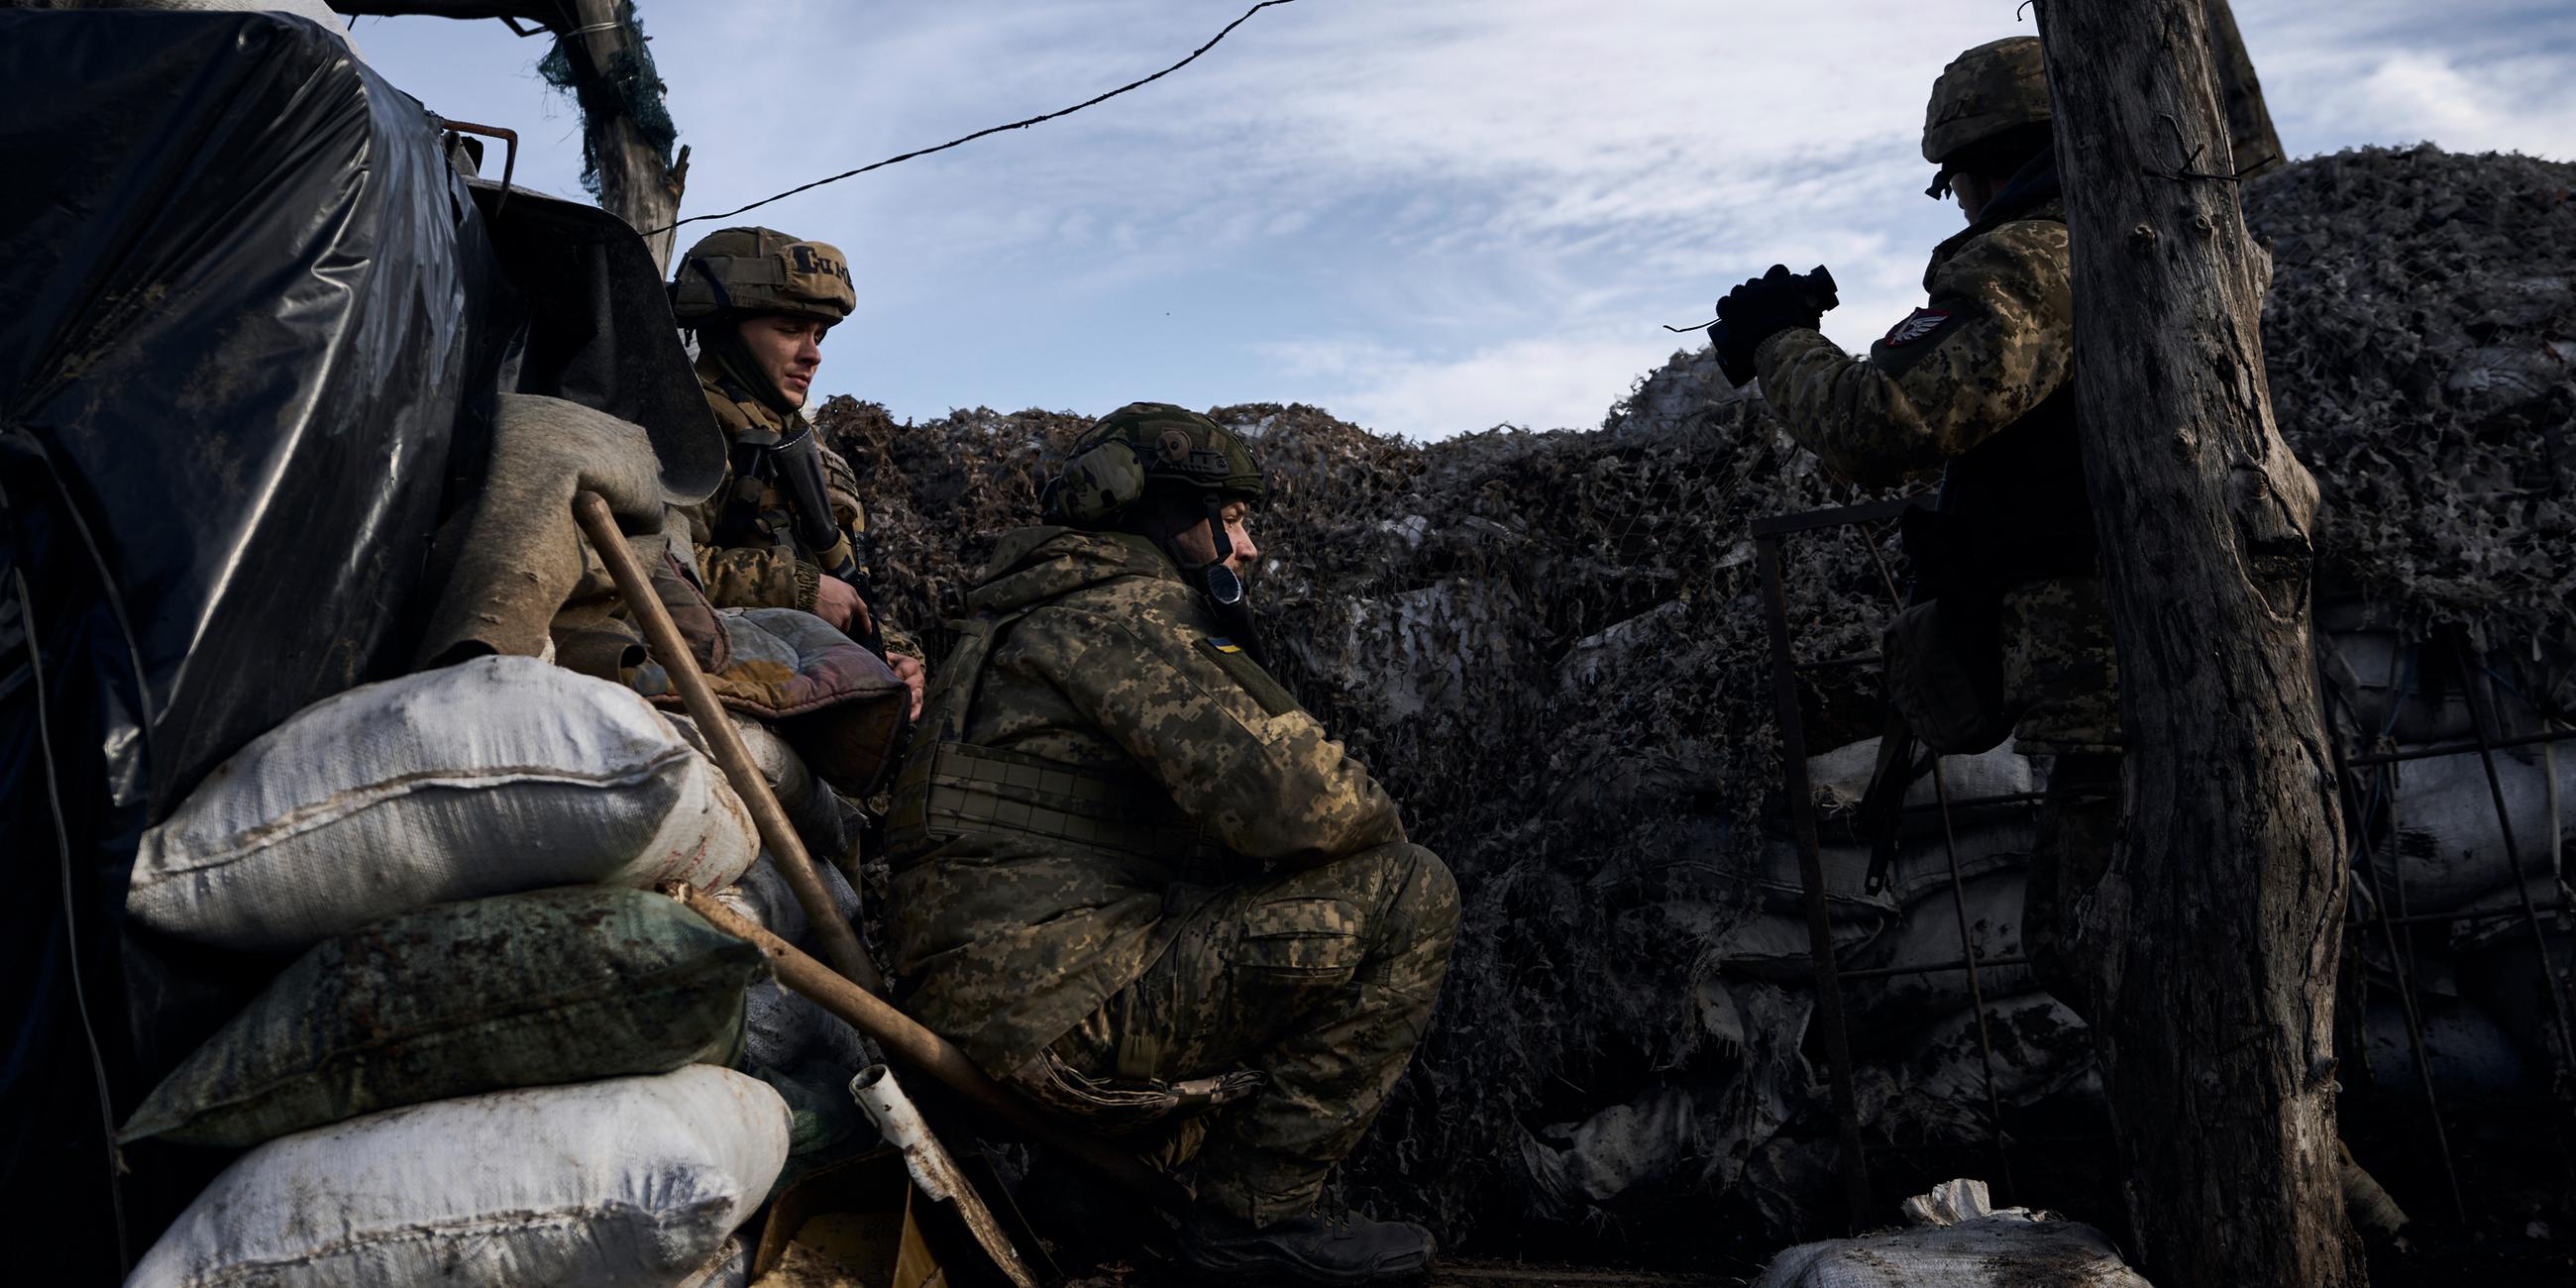 Ukrainische Soldaten gehen während der Kämpfe mit russischen Truppen in der Nähe von Marjinka in Region Donezk in Stellung.